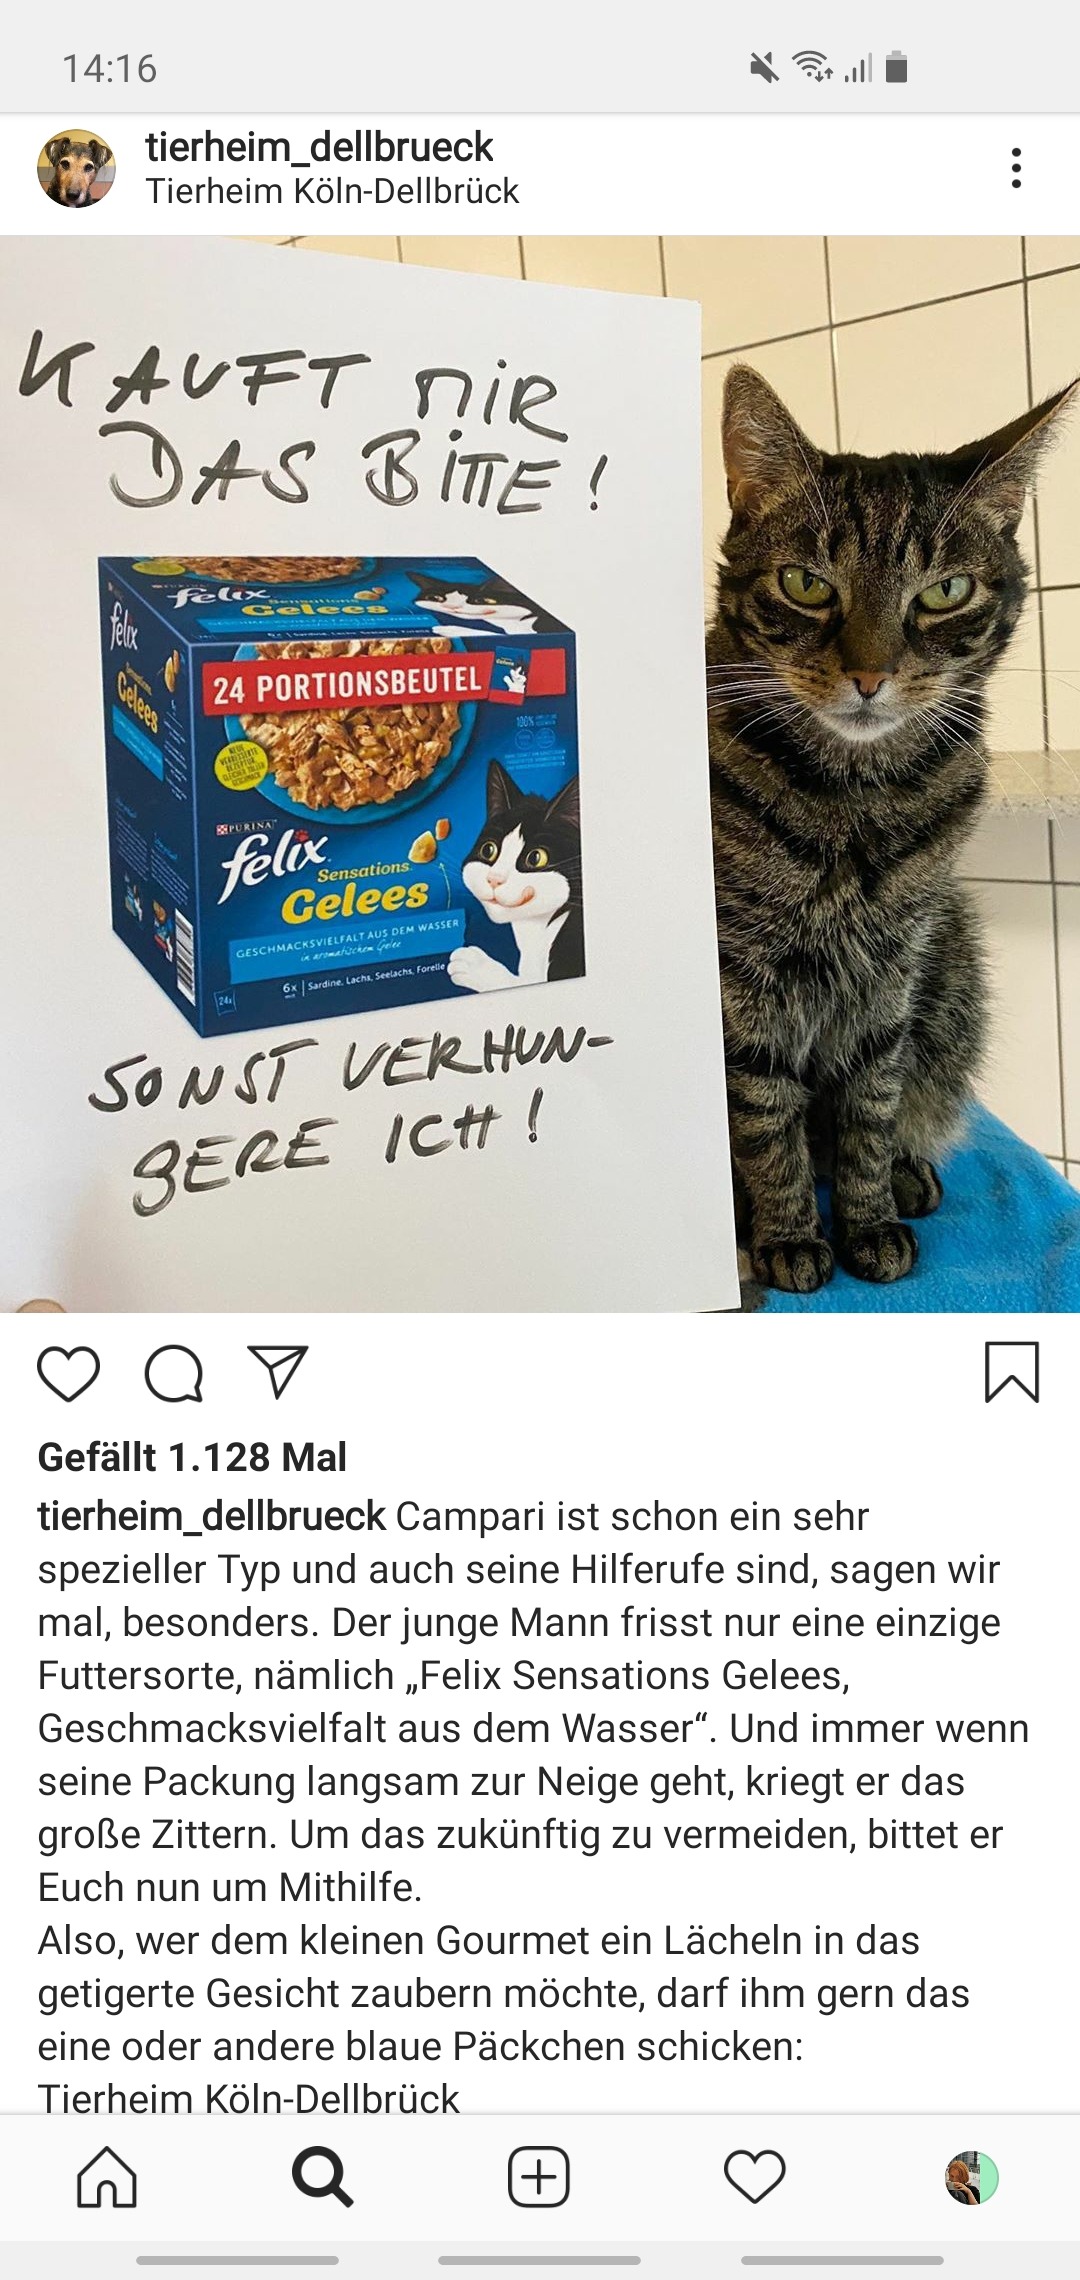 Das Foto zeigt einen Instagram-Post vom Tierheim Köln-Dellbrück. Zu sehen ist eine Katze und daneben ein Blatt mit der Abbildung von Katzenfutter und der Aufschrift "Kauft mir das bitte! Sonst verhungere ich."